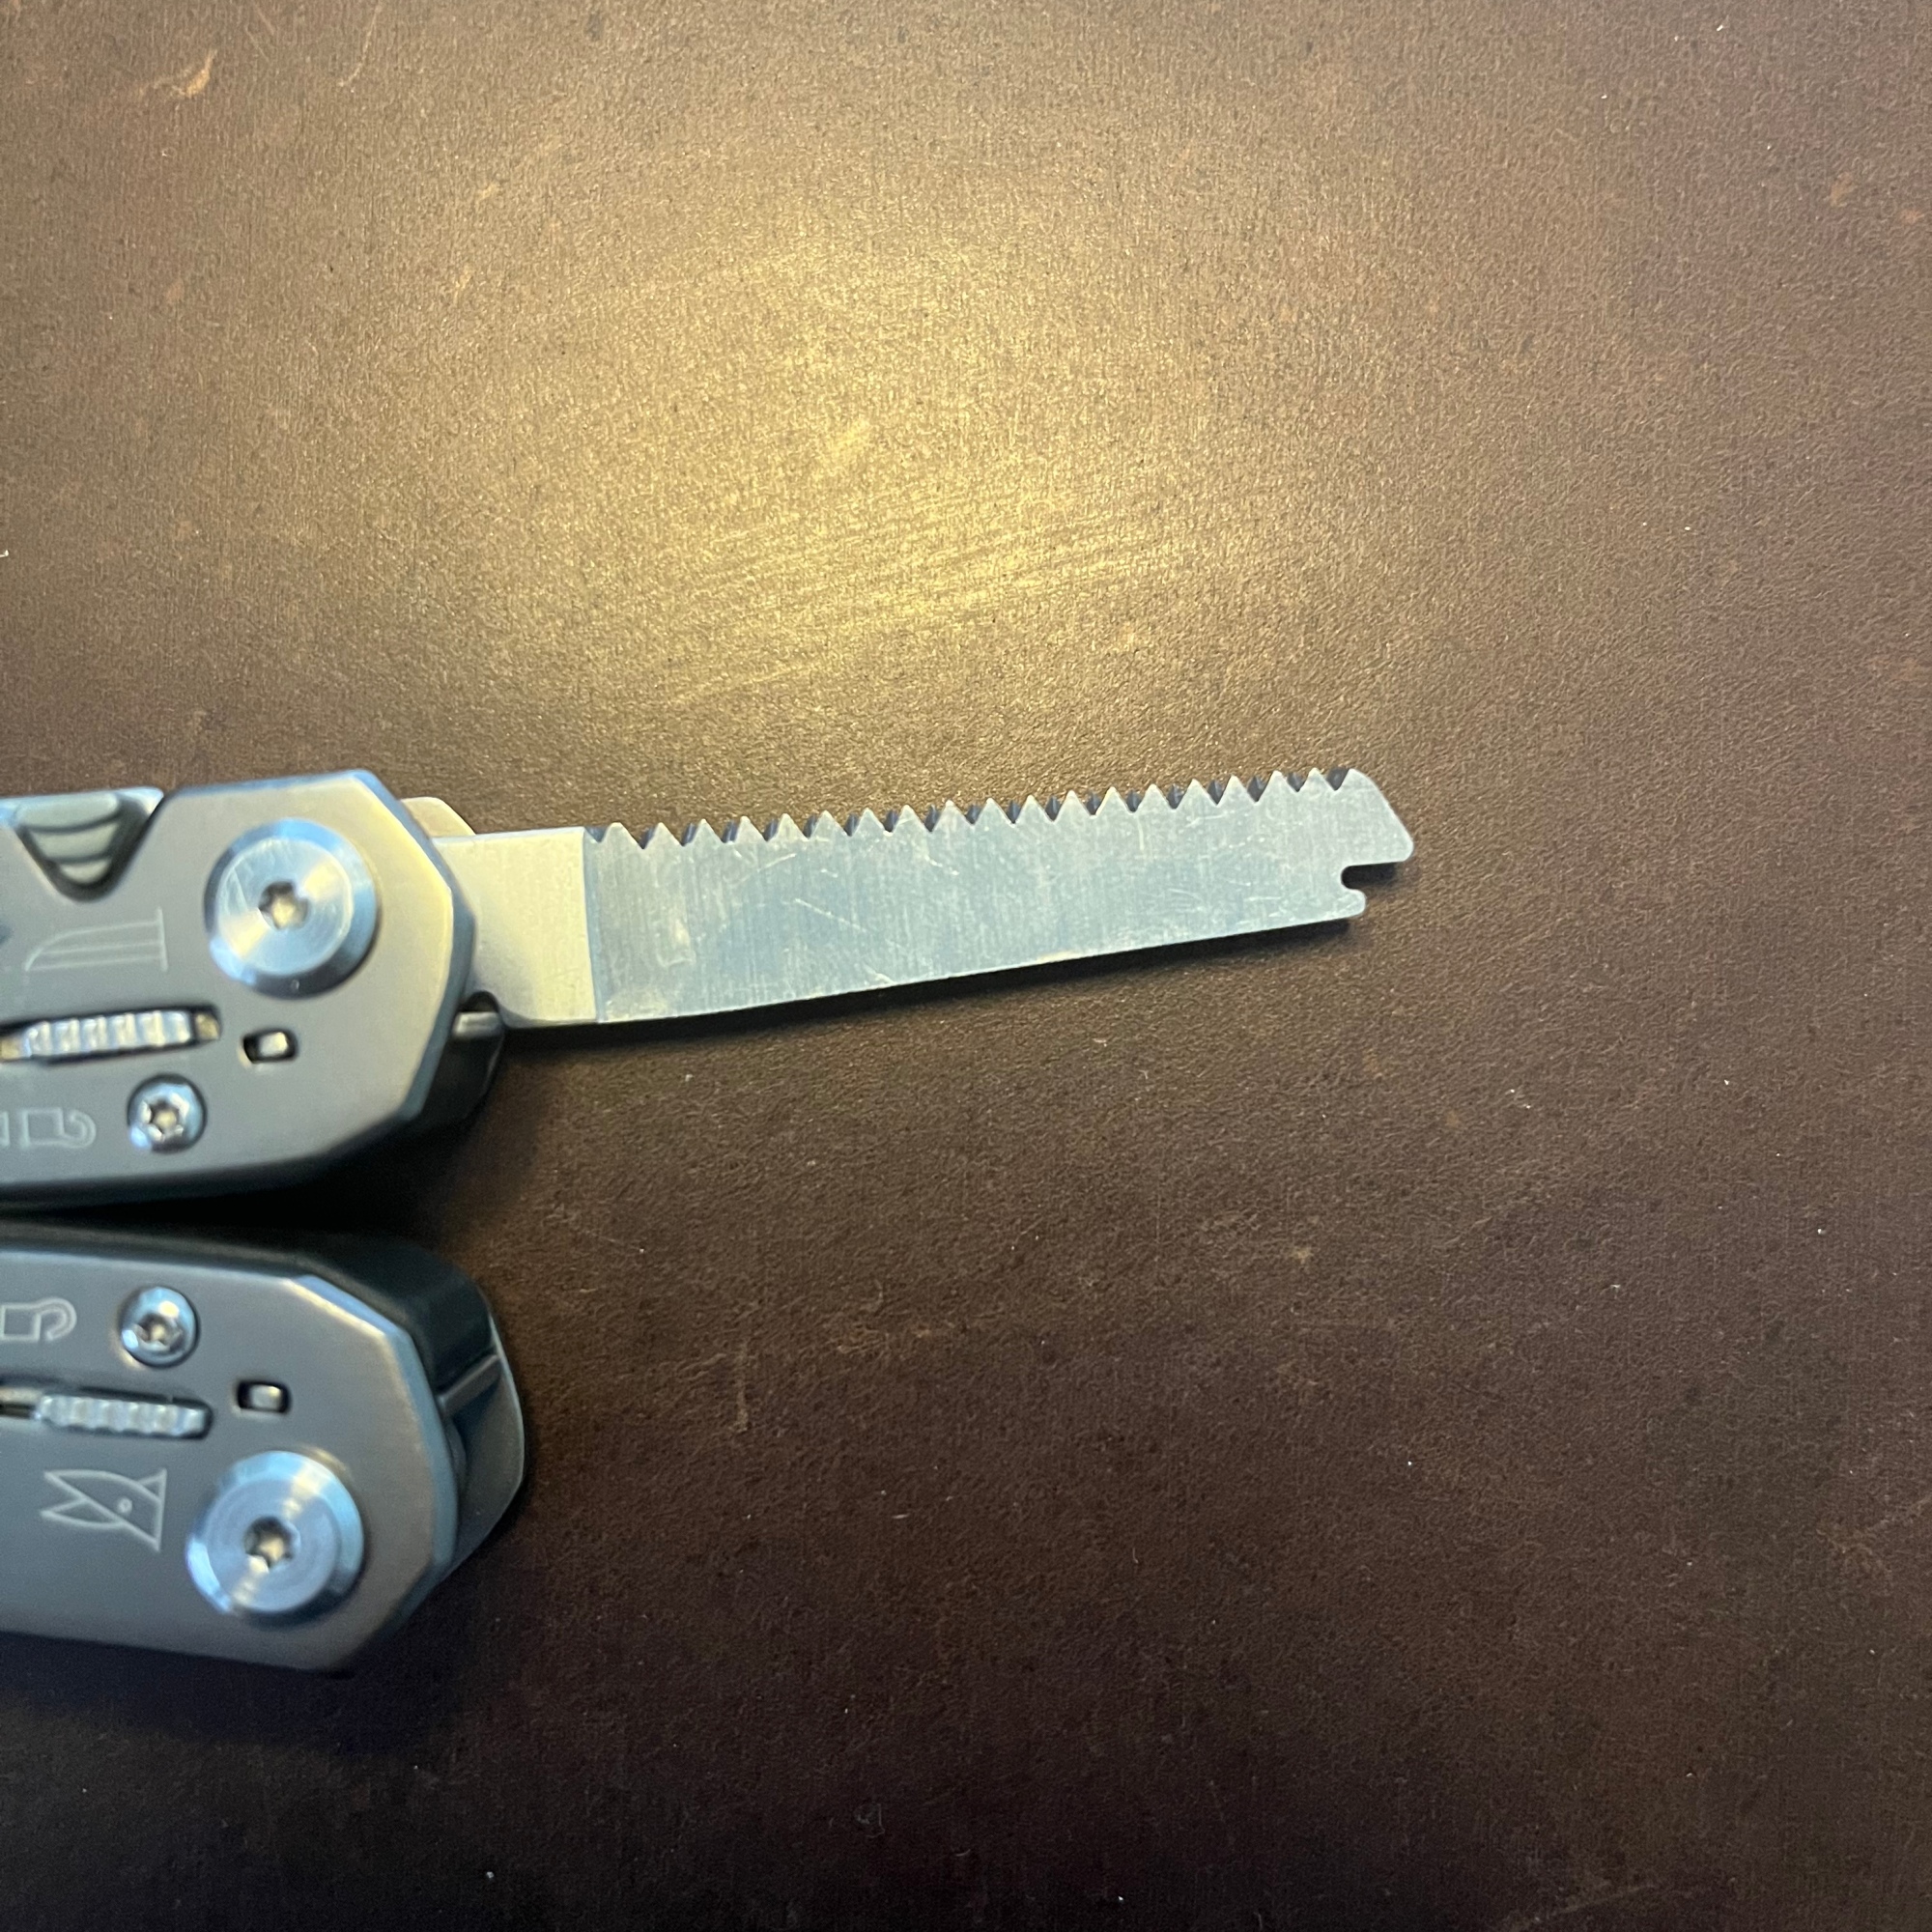 Gerber multi-tool saw